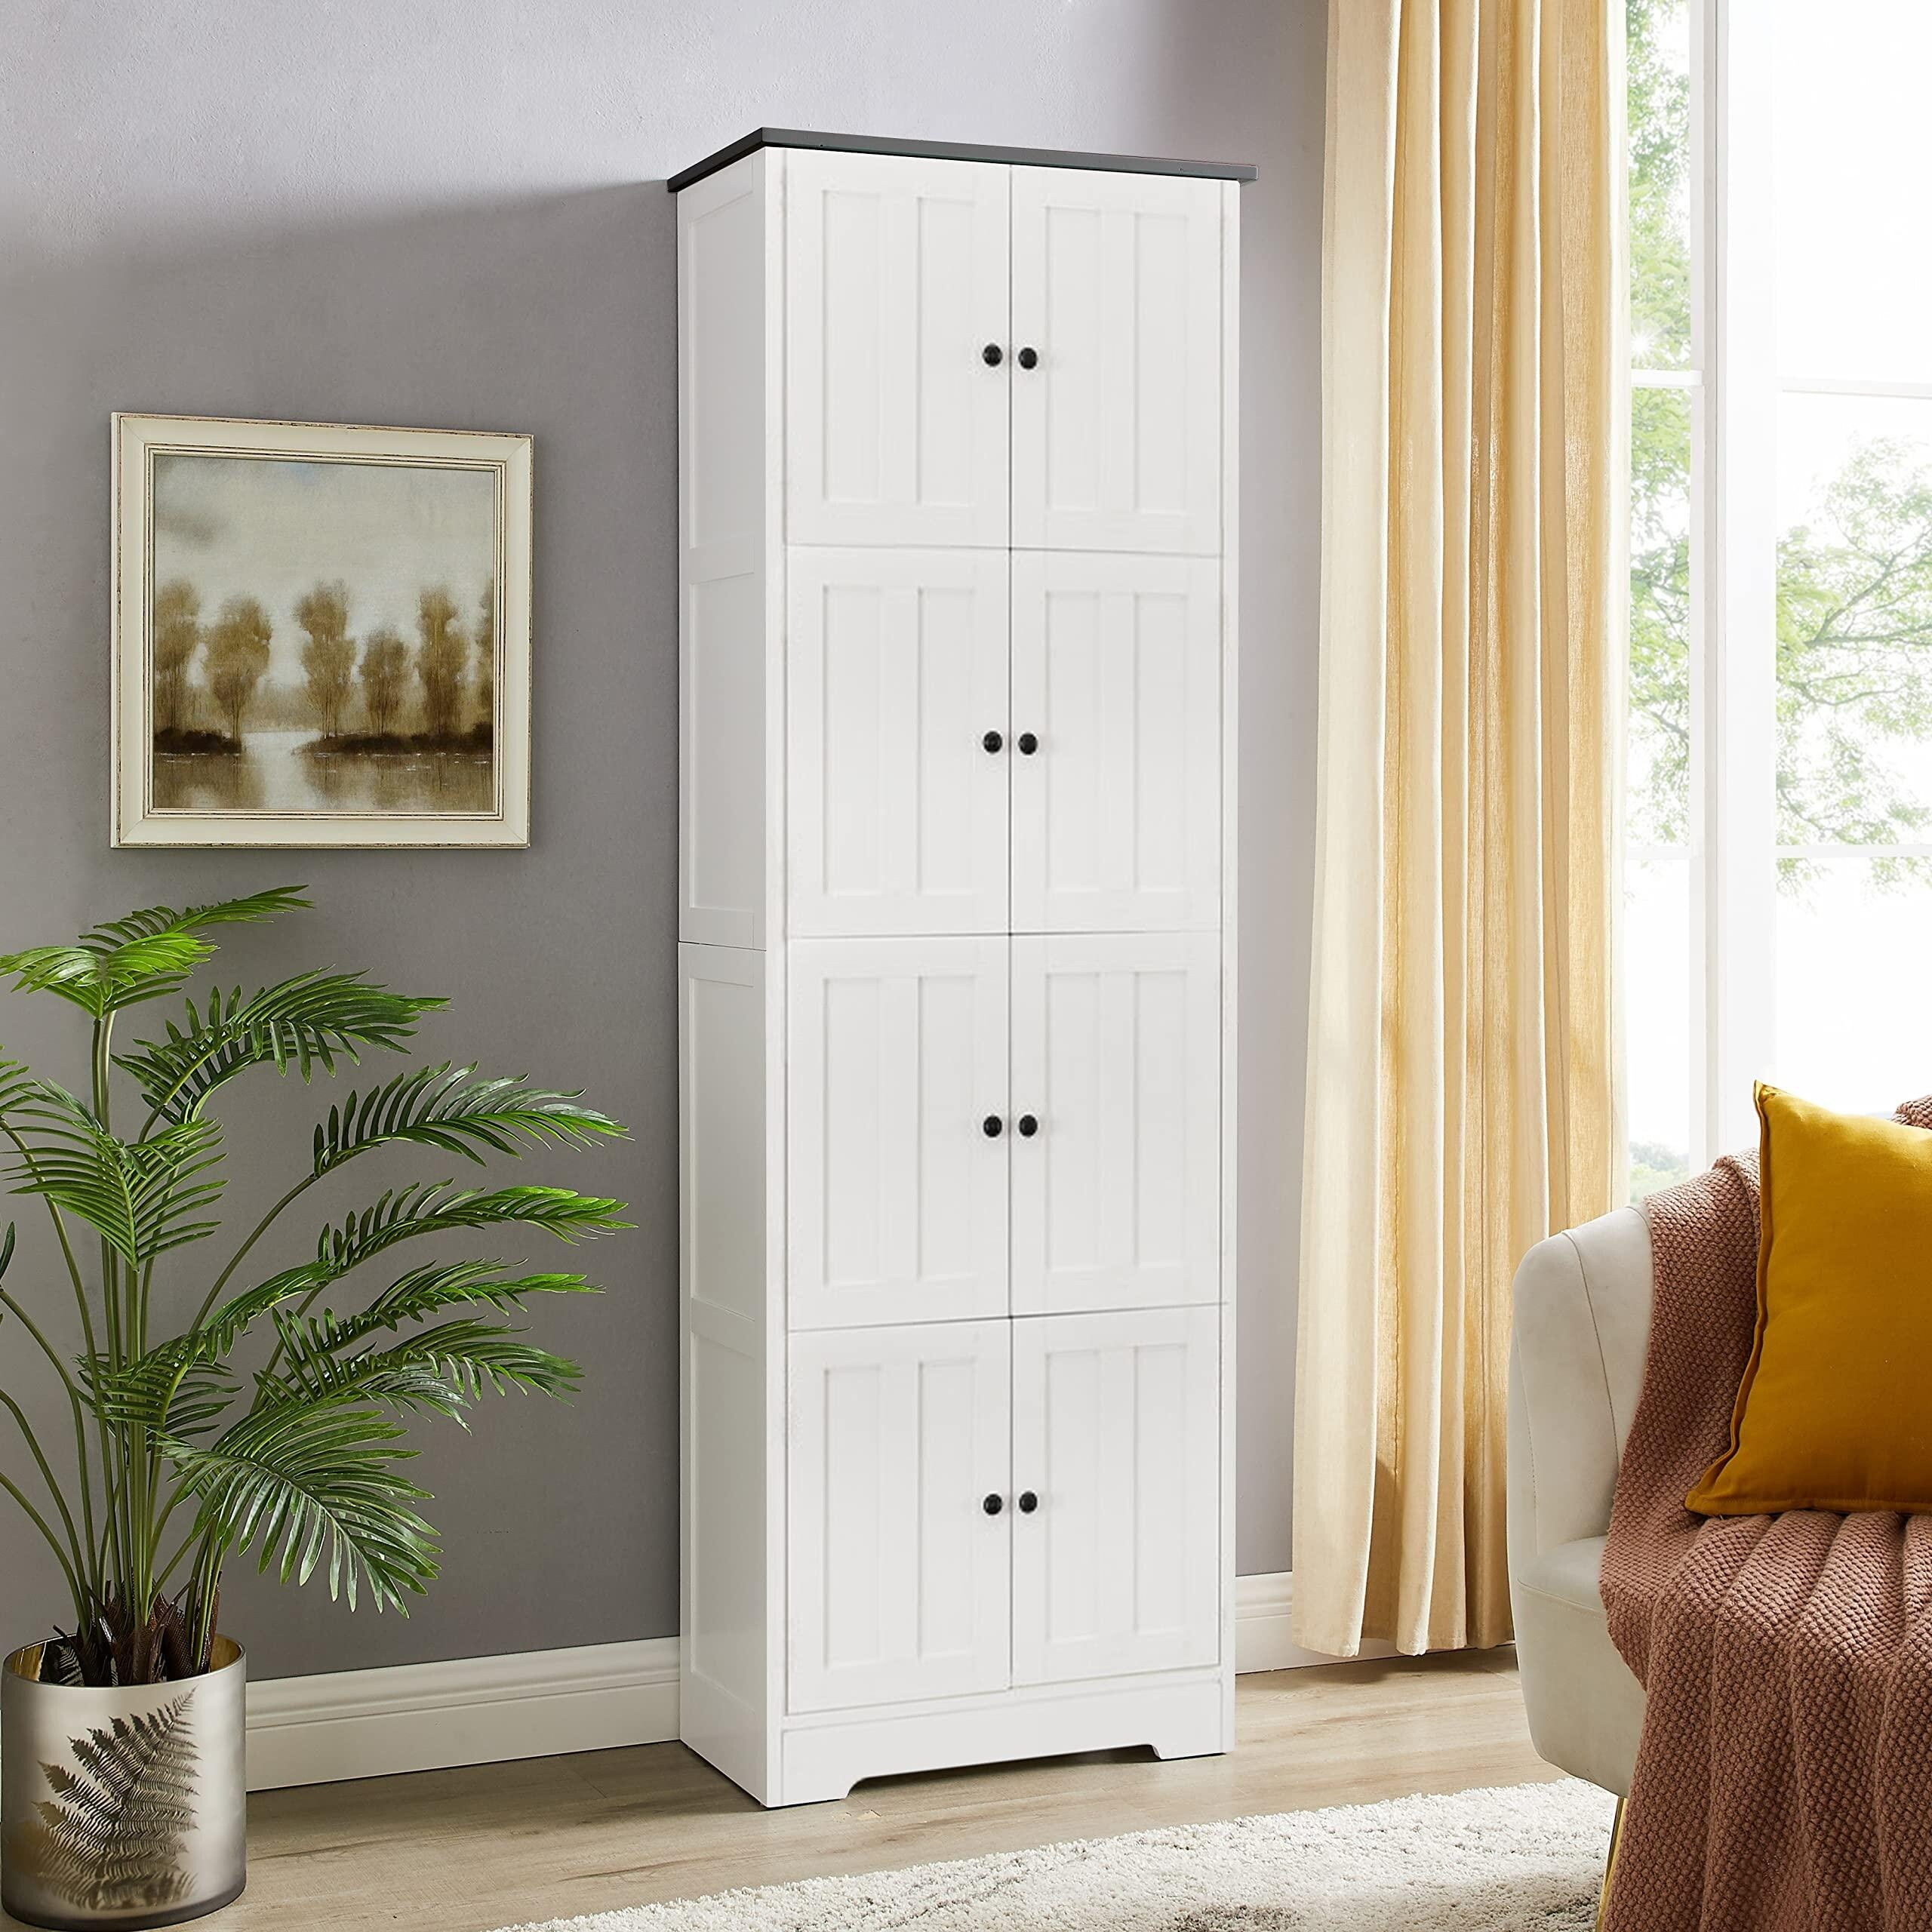 Middelbrook Designs Tall Sliding Groove Door Storage Cabinet - On Sale -  Bed Bath & Beyond - 33618045